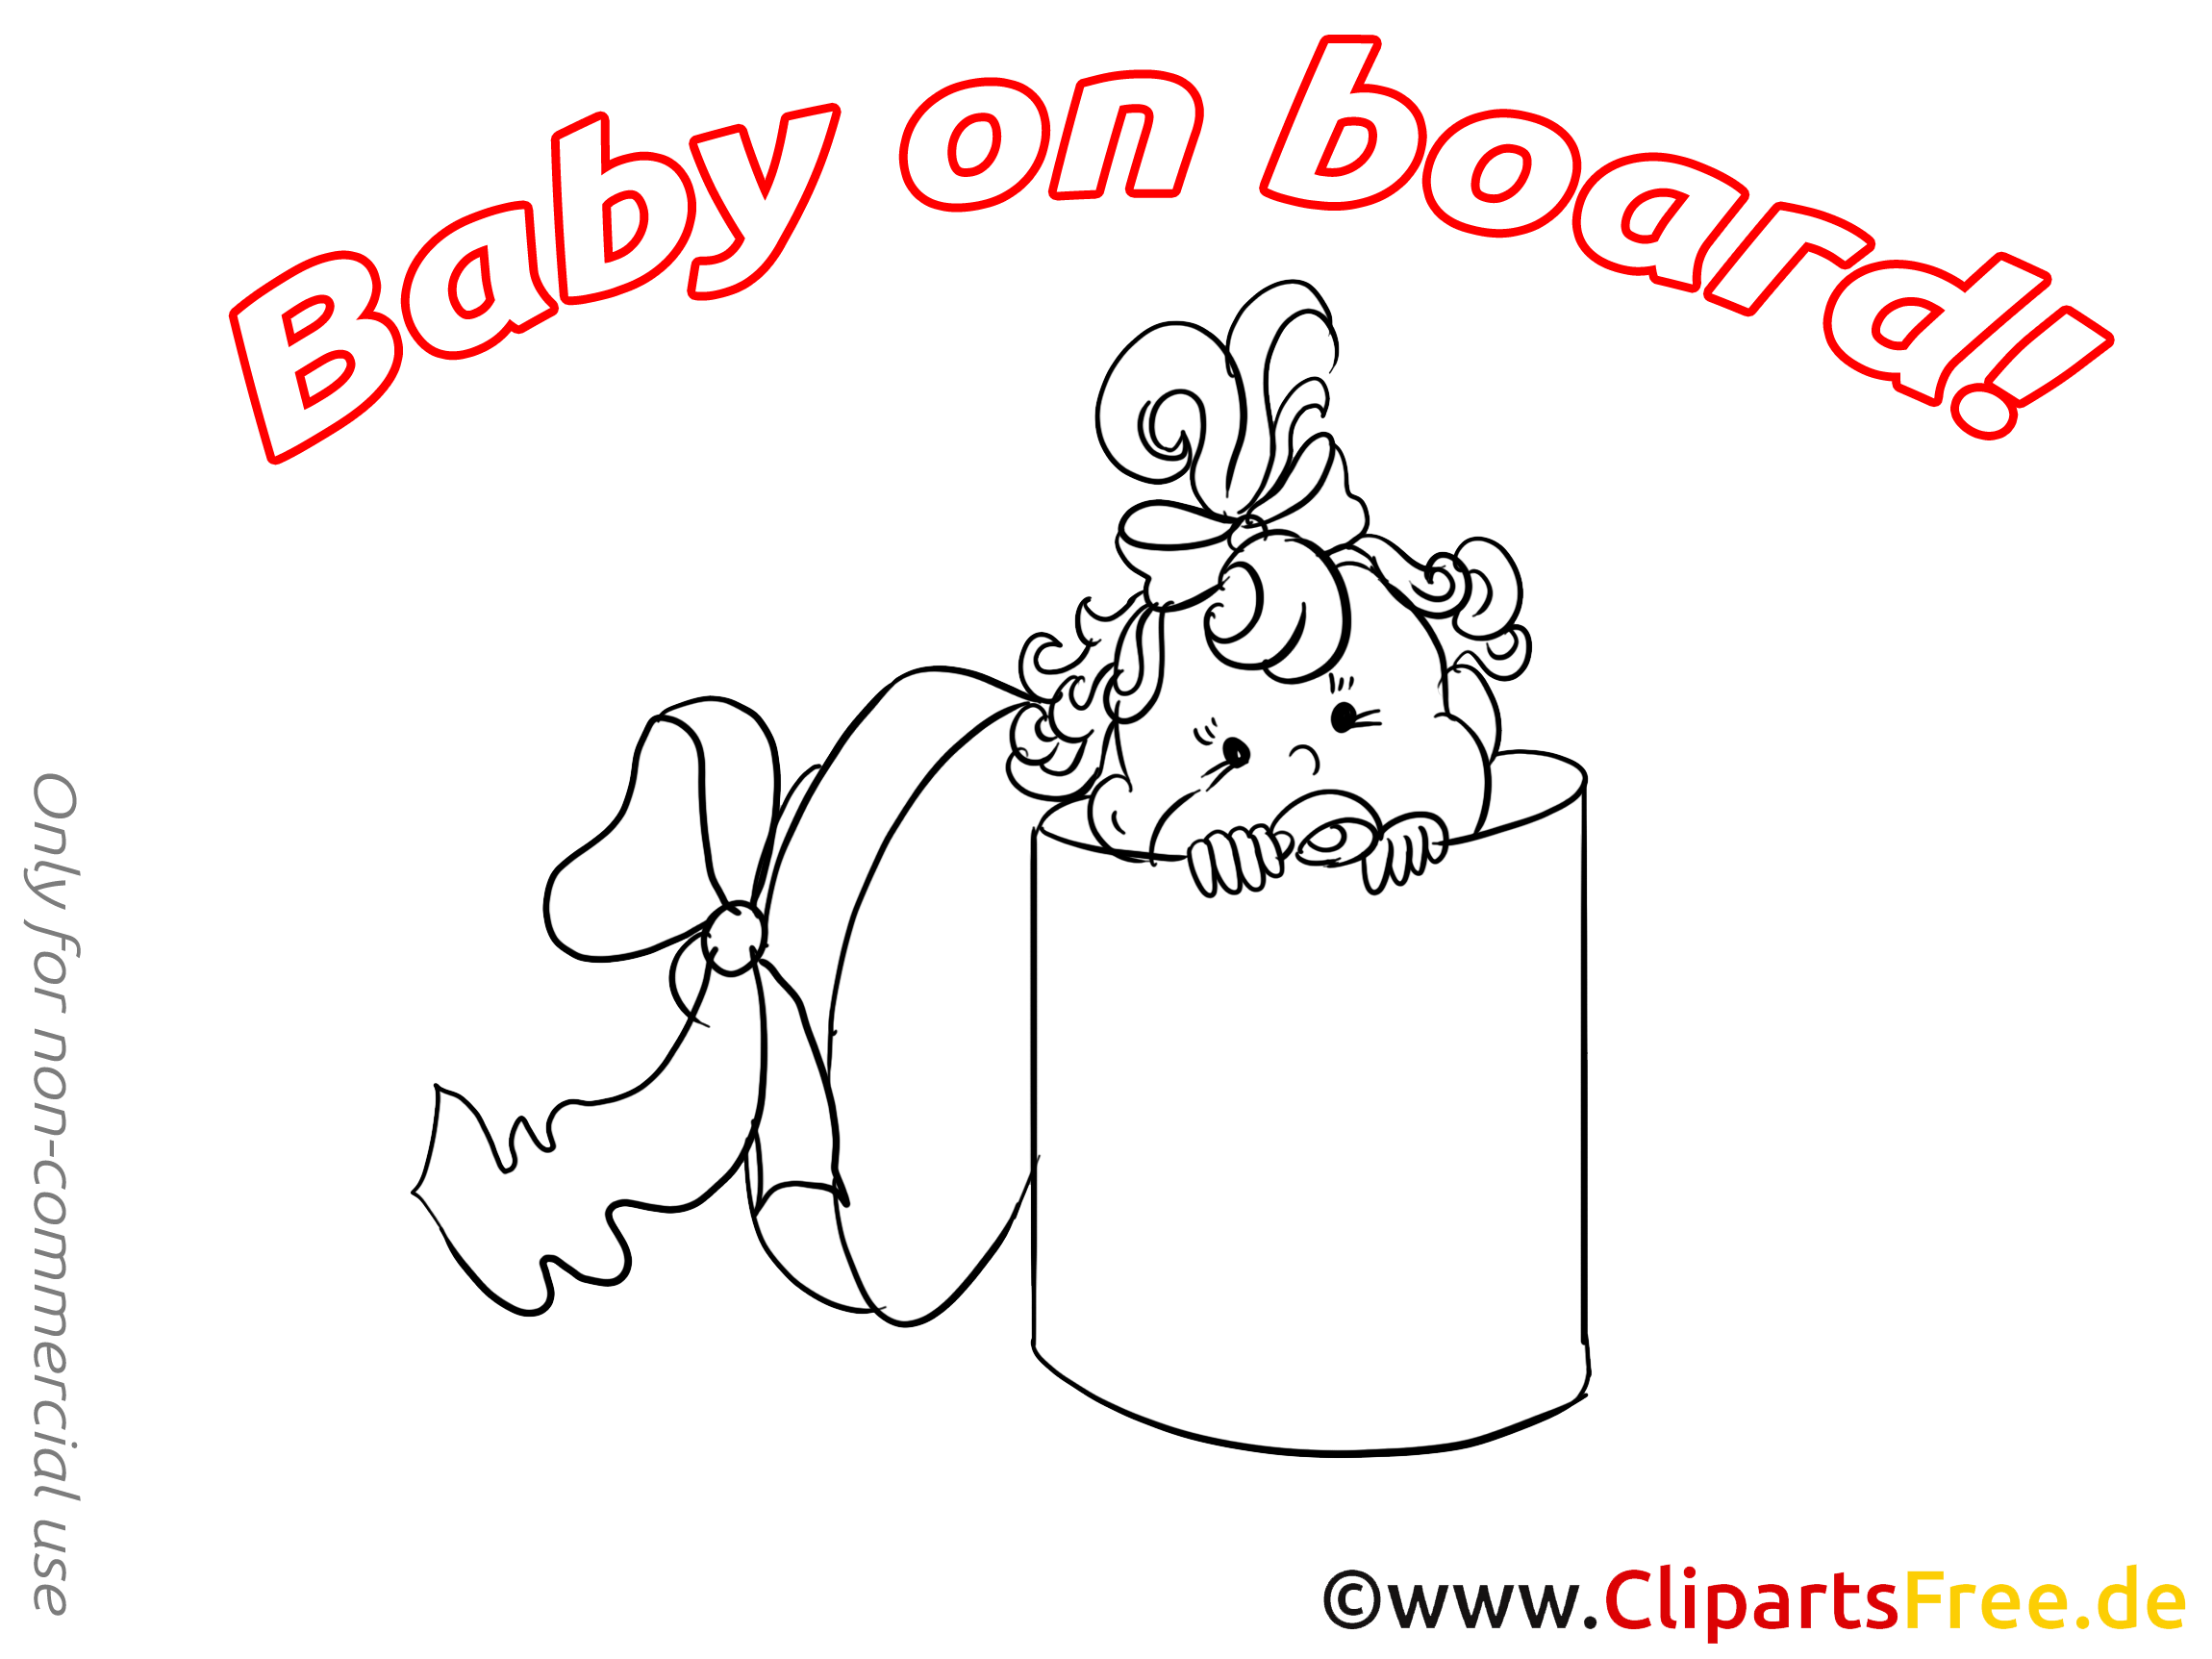 Boîte image à imprimer – Bébé à bord cliparts